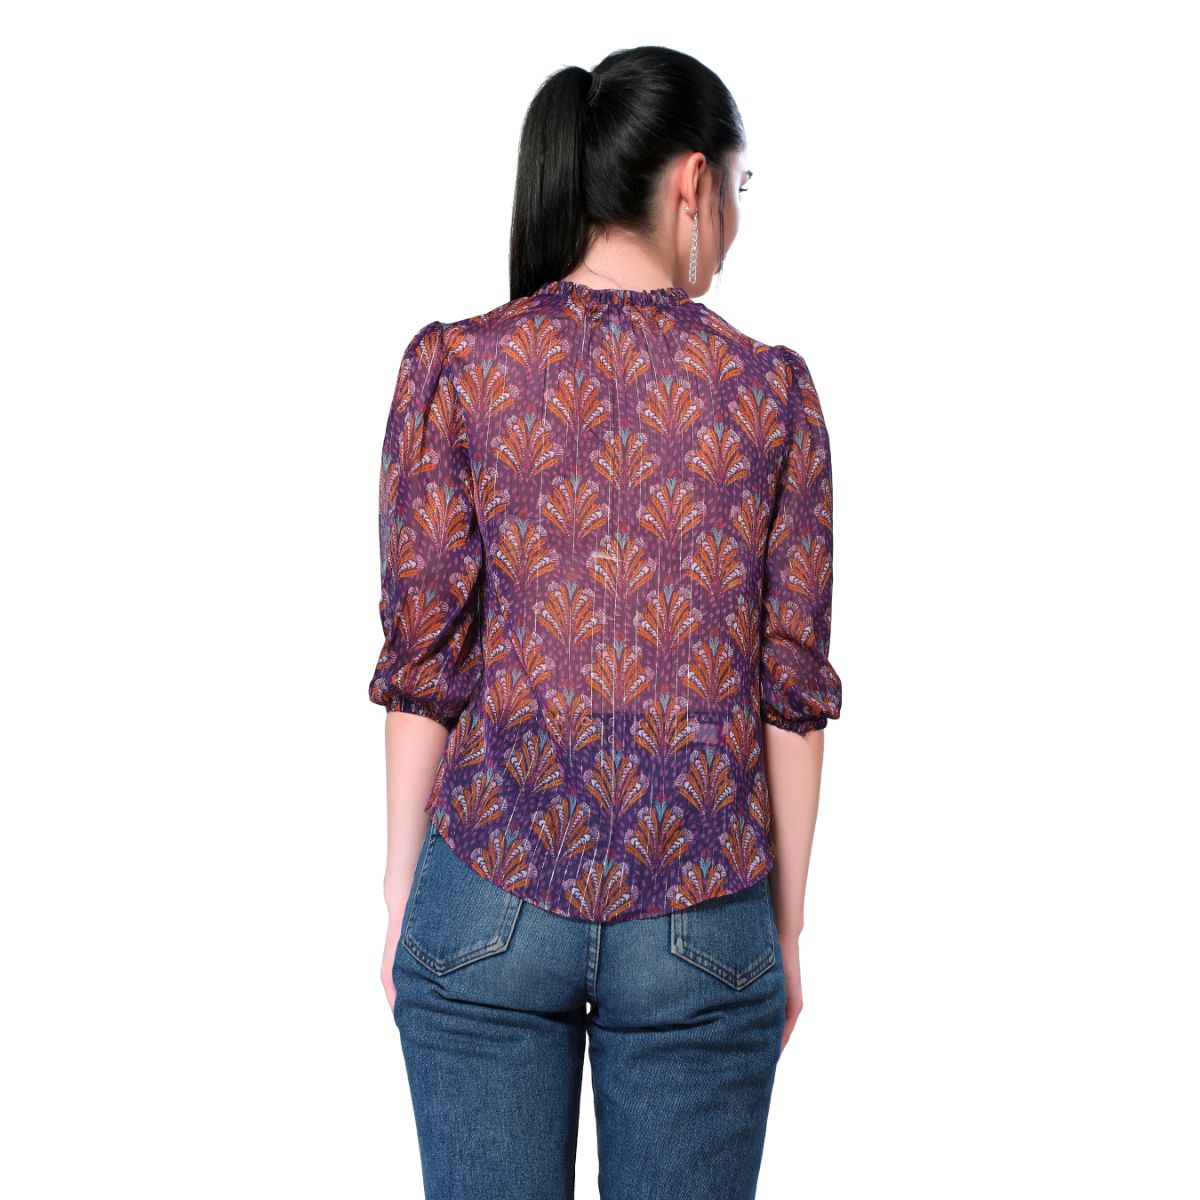 Mantra purple lurex printed shirt